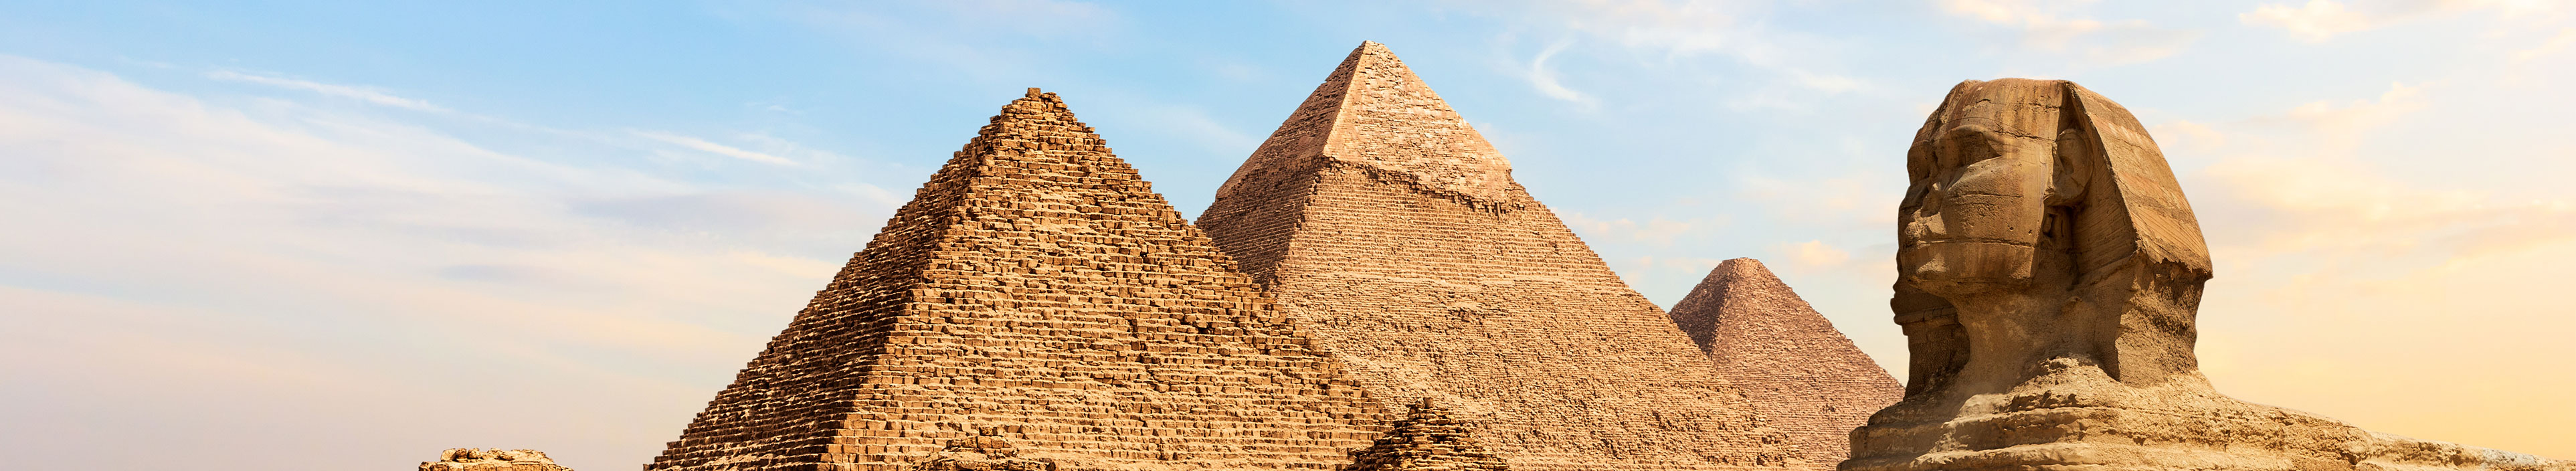 Pyramiden und die Sphinx in Ägypten